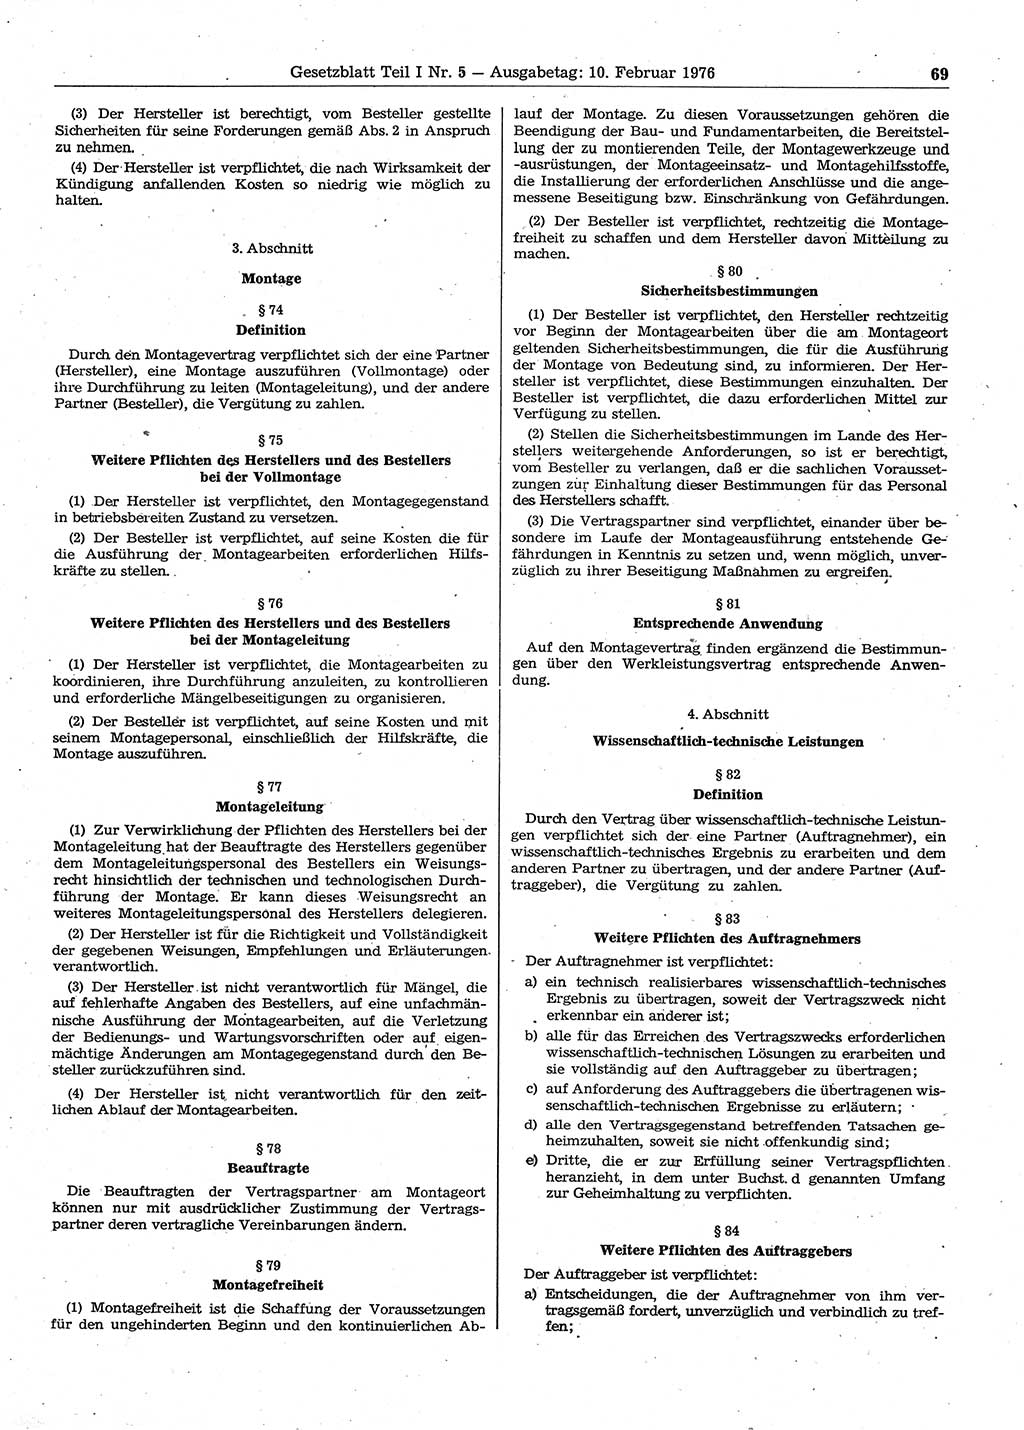 Gesetzblatt (GBl.) der Deutschen Demokratischen Republik (DDR) Teil Ⅰ 1976, Seite 69 (GBl. DDR Ⅰ 1976, S. 69)